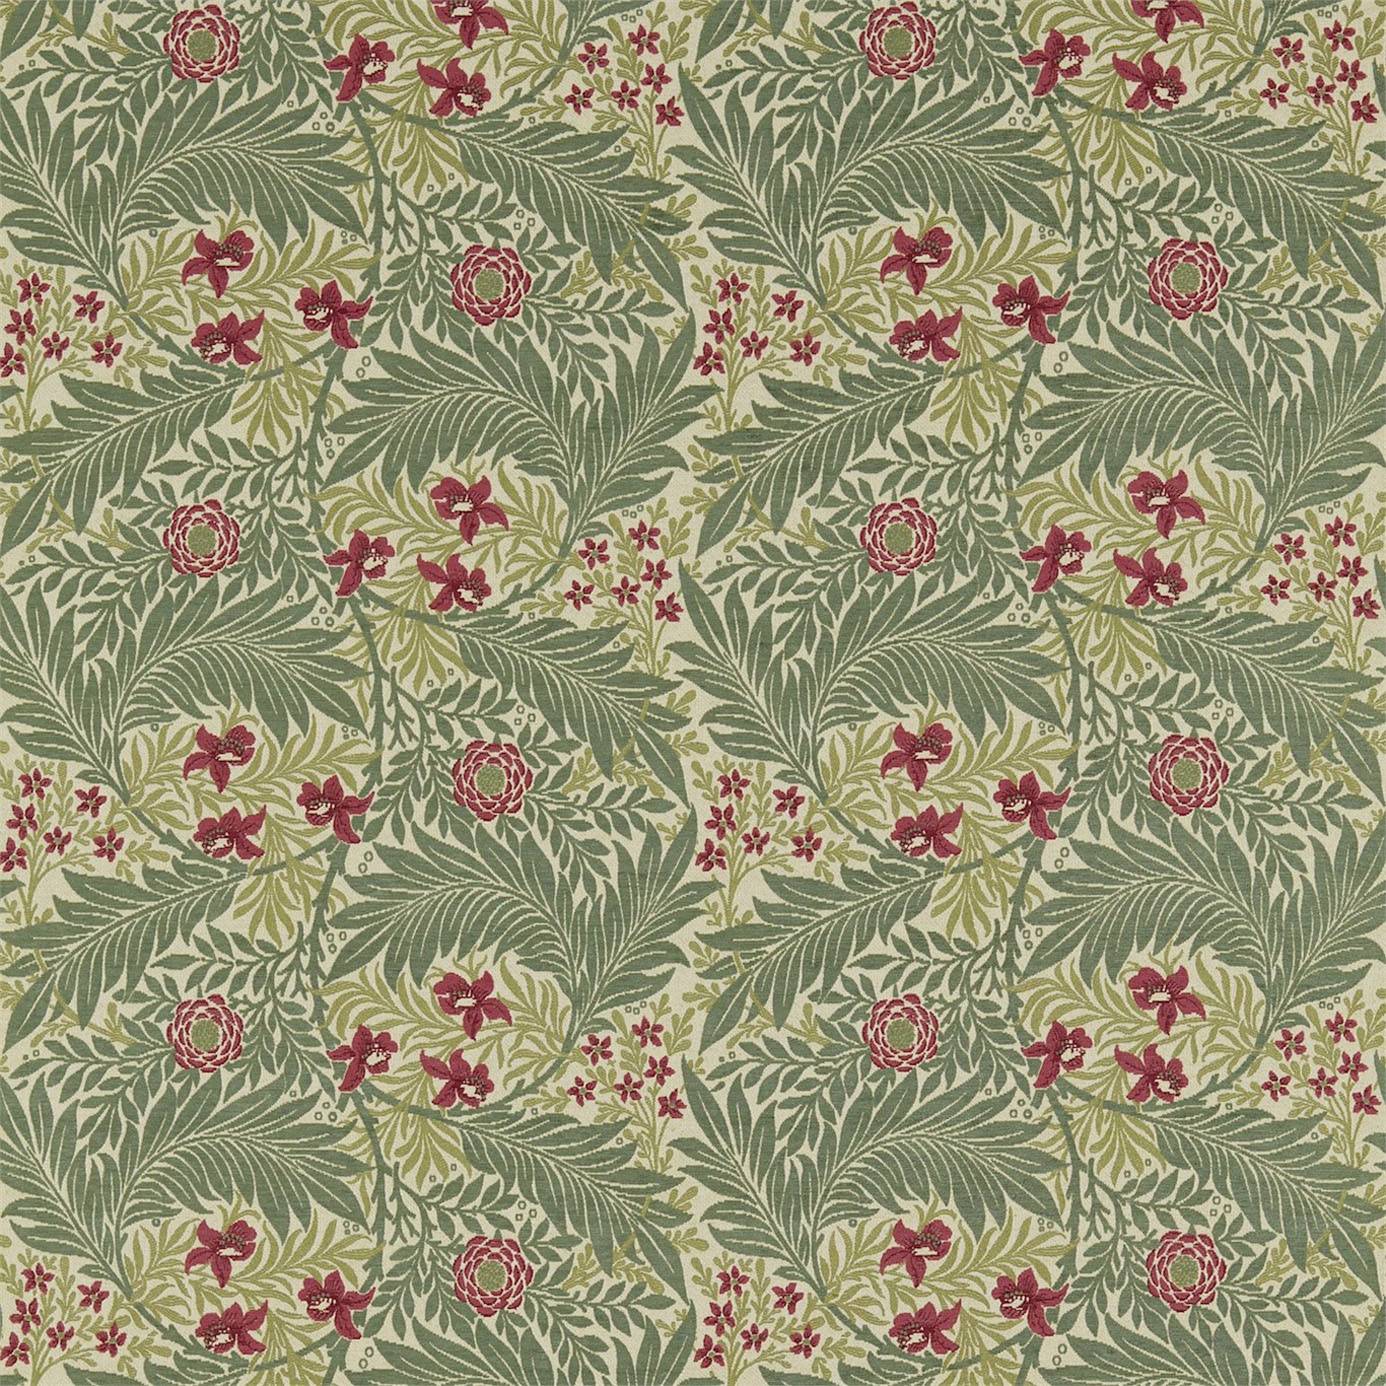 Larkspur Fabric - Privet/Rose (DKELLA301) - William Morris & Co Pimpernel Fabrics Collection